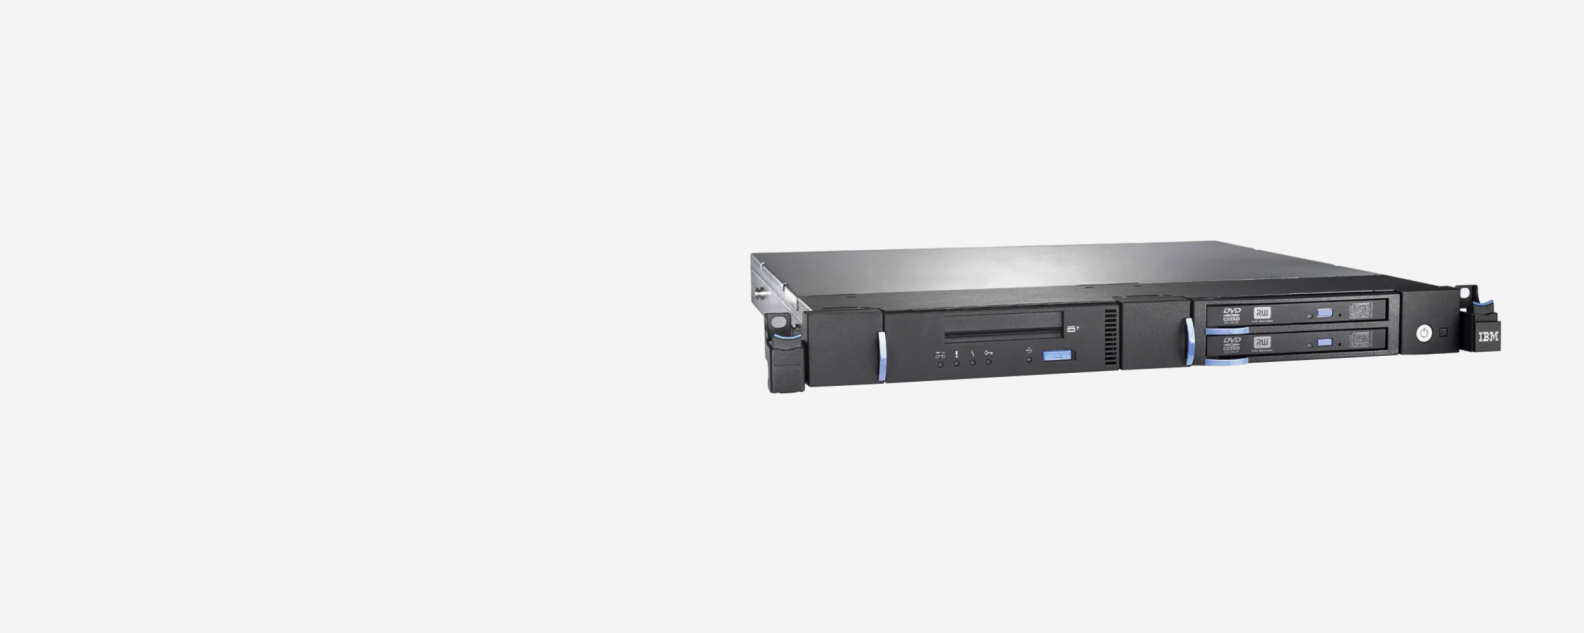 image of IBM 7226 Multimedia Storage product